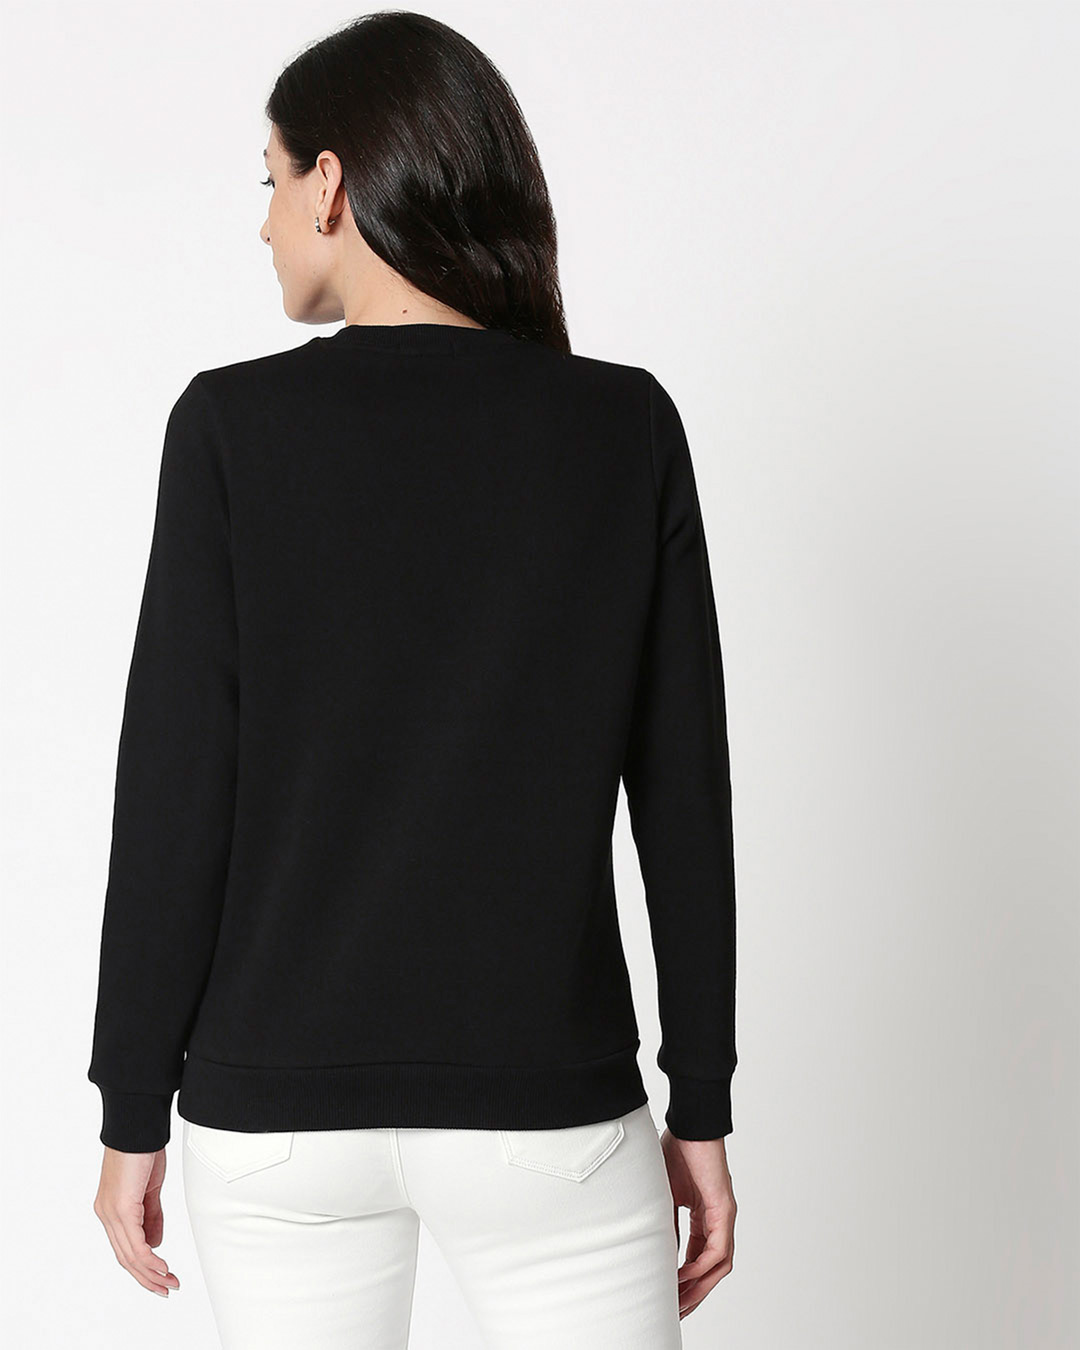 Shop Grow Positive Thoughts Fleece Sweatshirt Black-Back